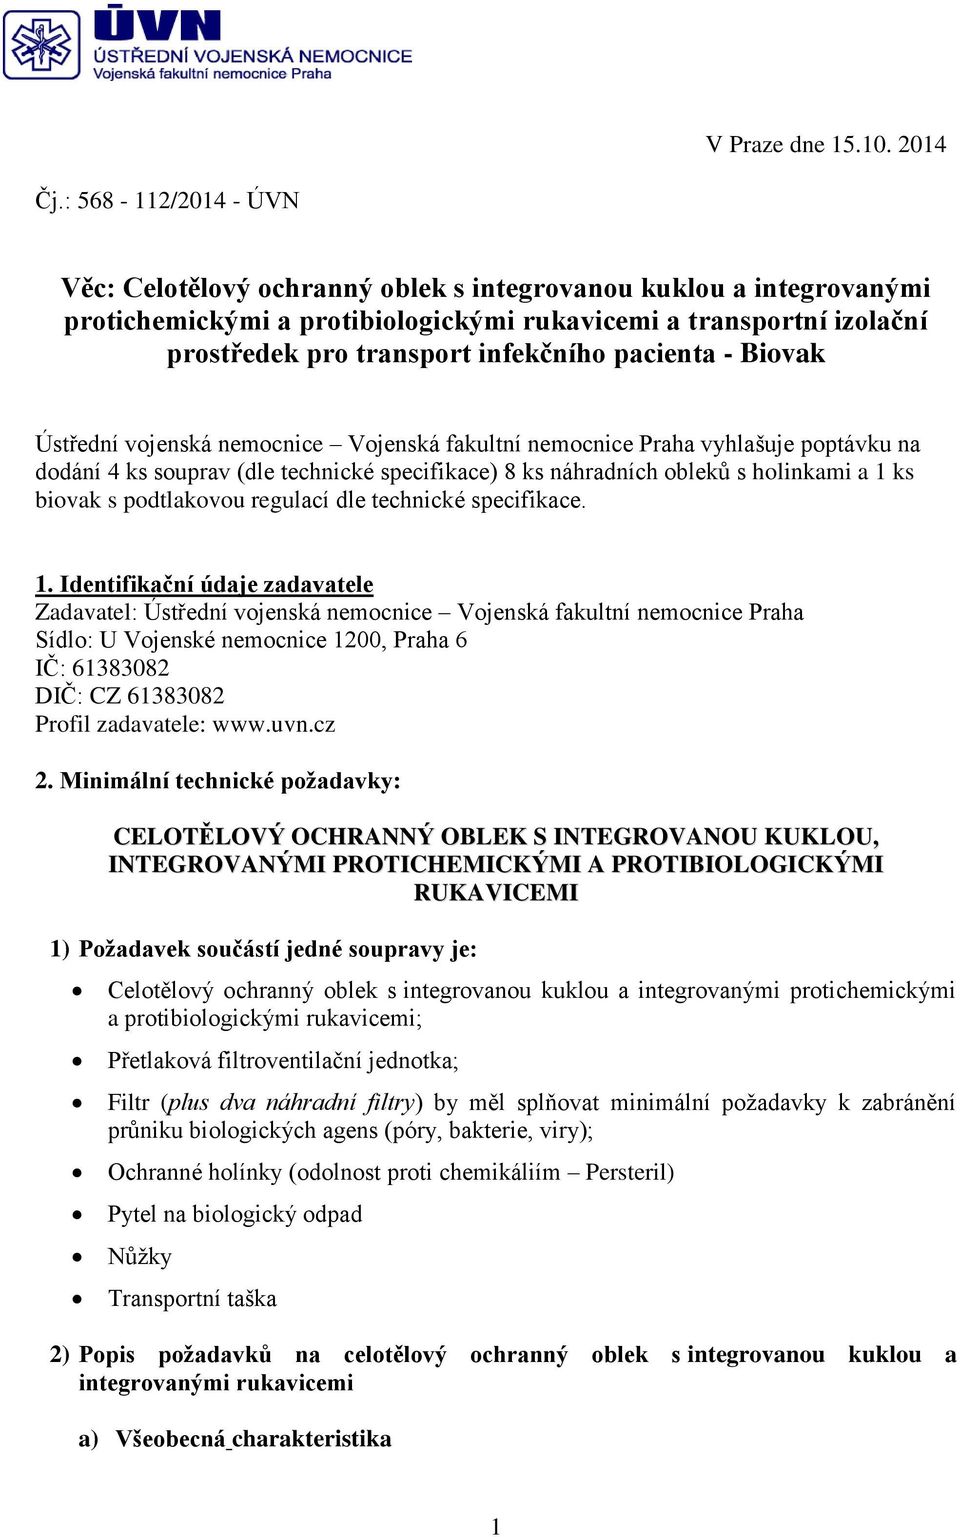 pacienta - Biovak Ústřední vojenská nemocnice Vojenská fakultní nemocnice Praha vyhlašuje poptávku na dodání 4 ks souprav (dle technické specifikace) 8 ks náhradních obleků s holinkami a 1 ks biovak